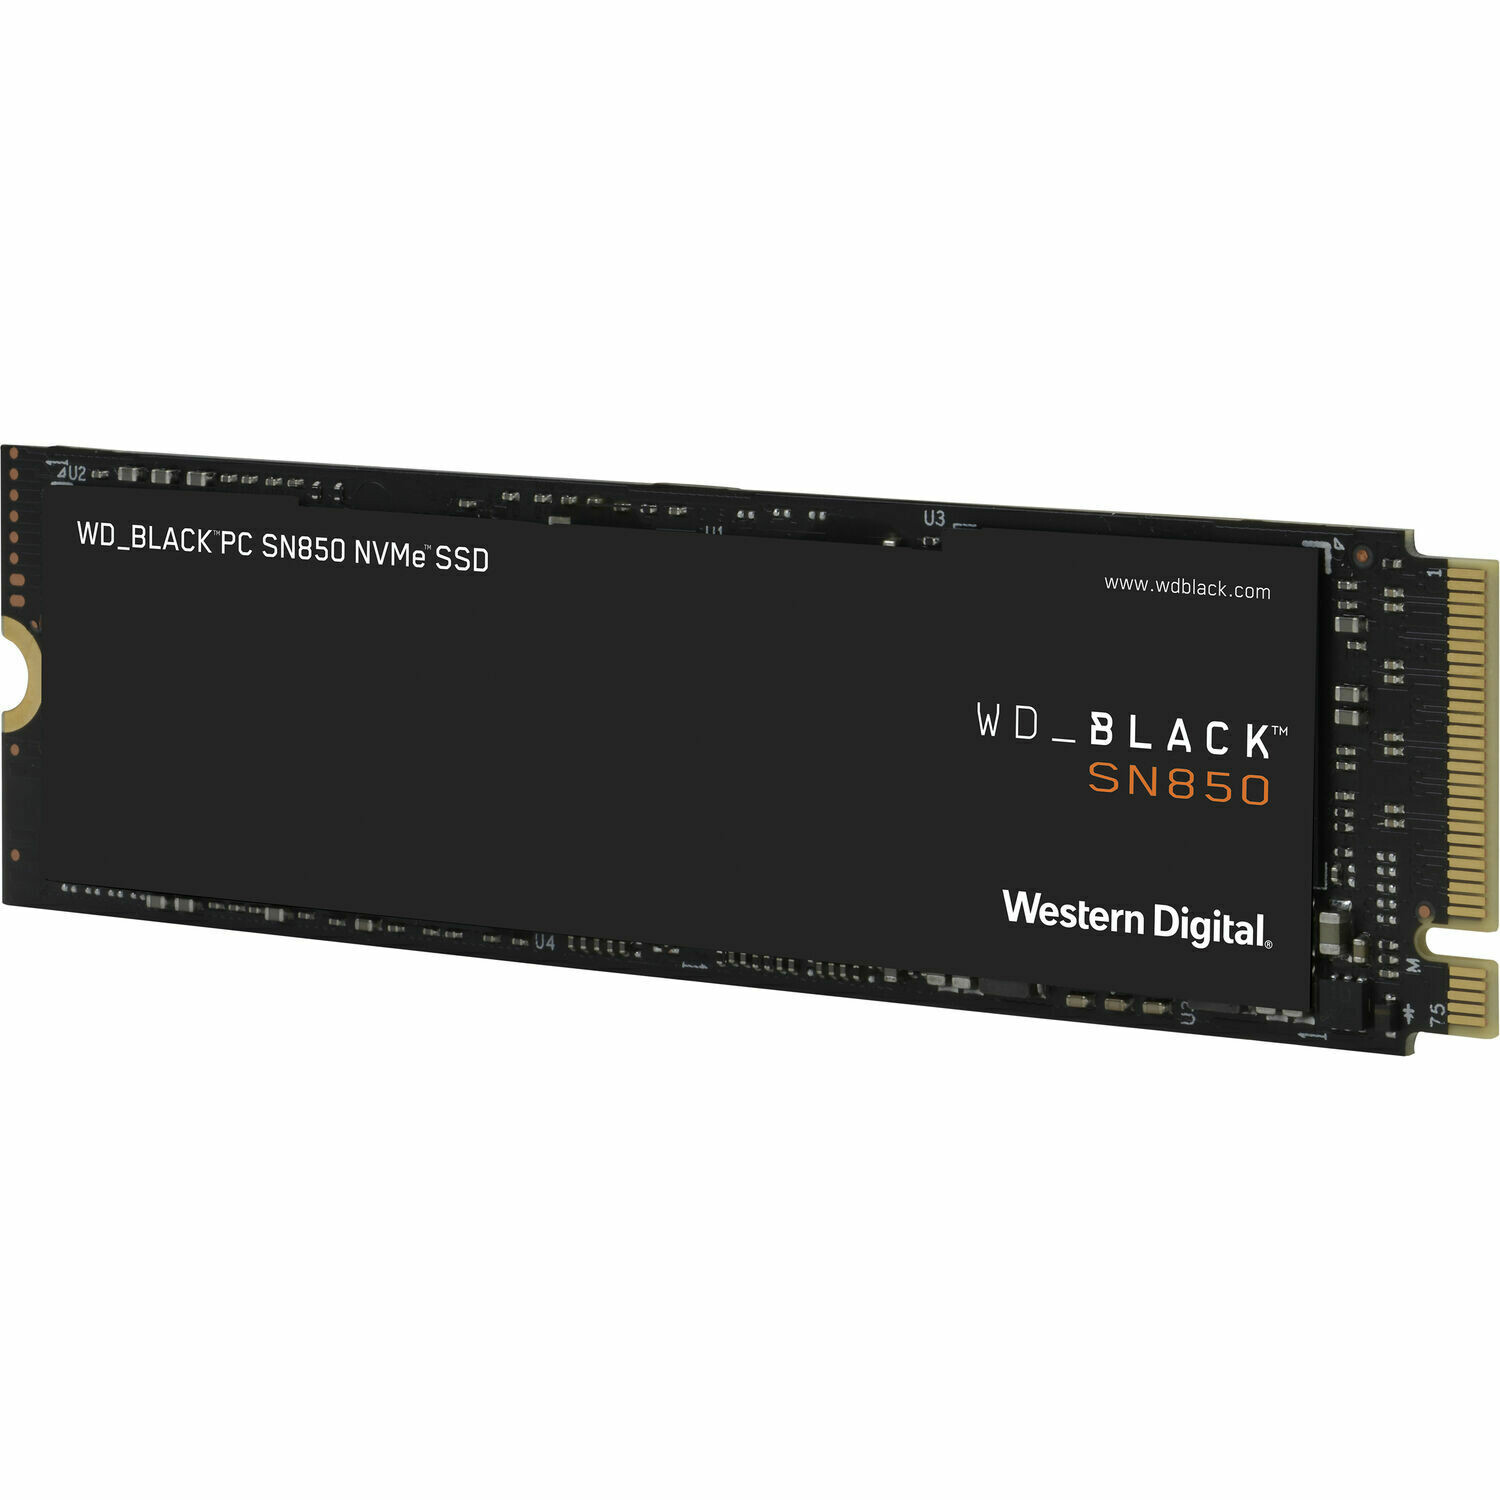 WD BLACK SN850 1TB GEN4 (PCIE 4.0) NVMe 3D NAND SSD